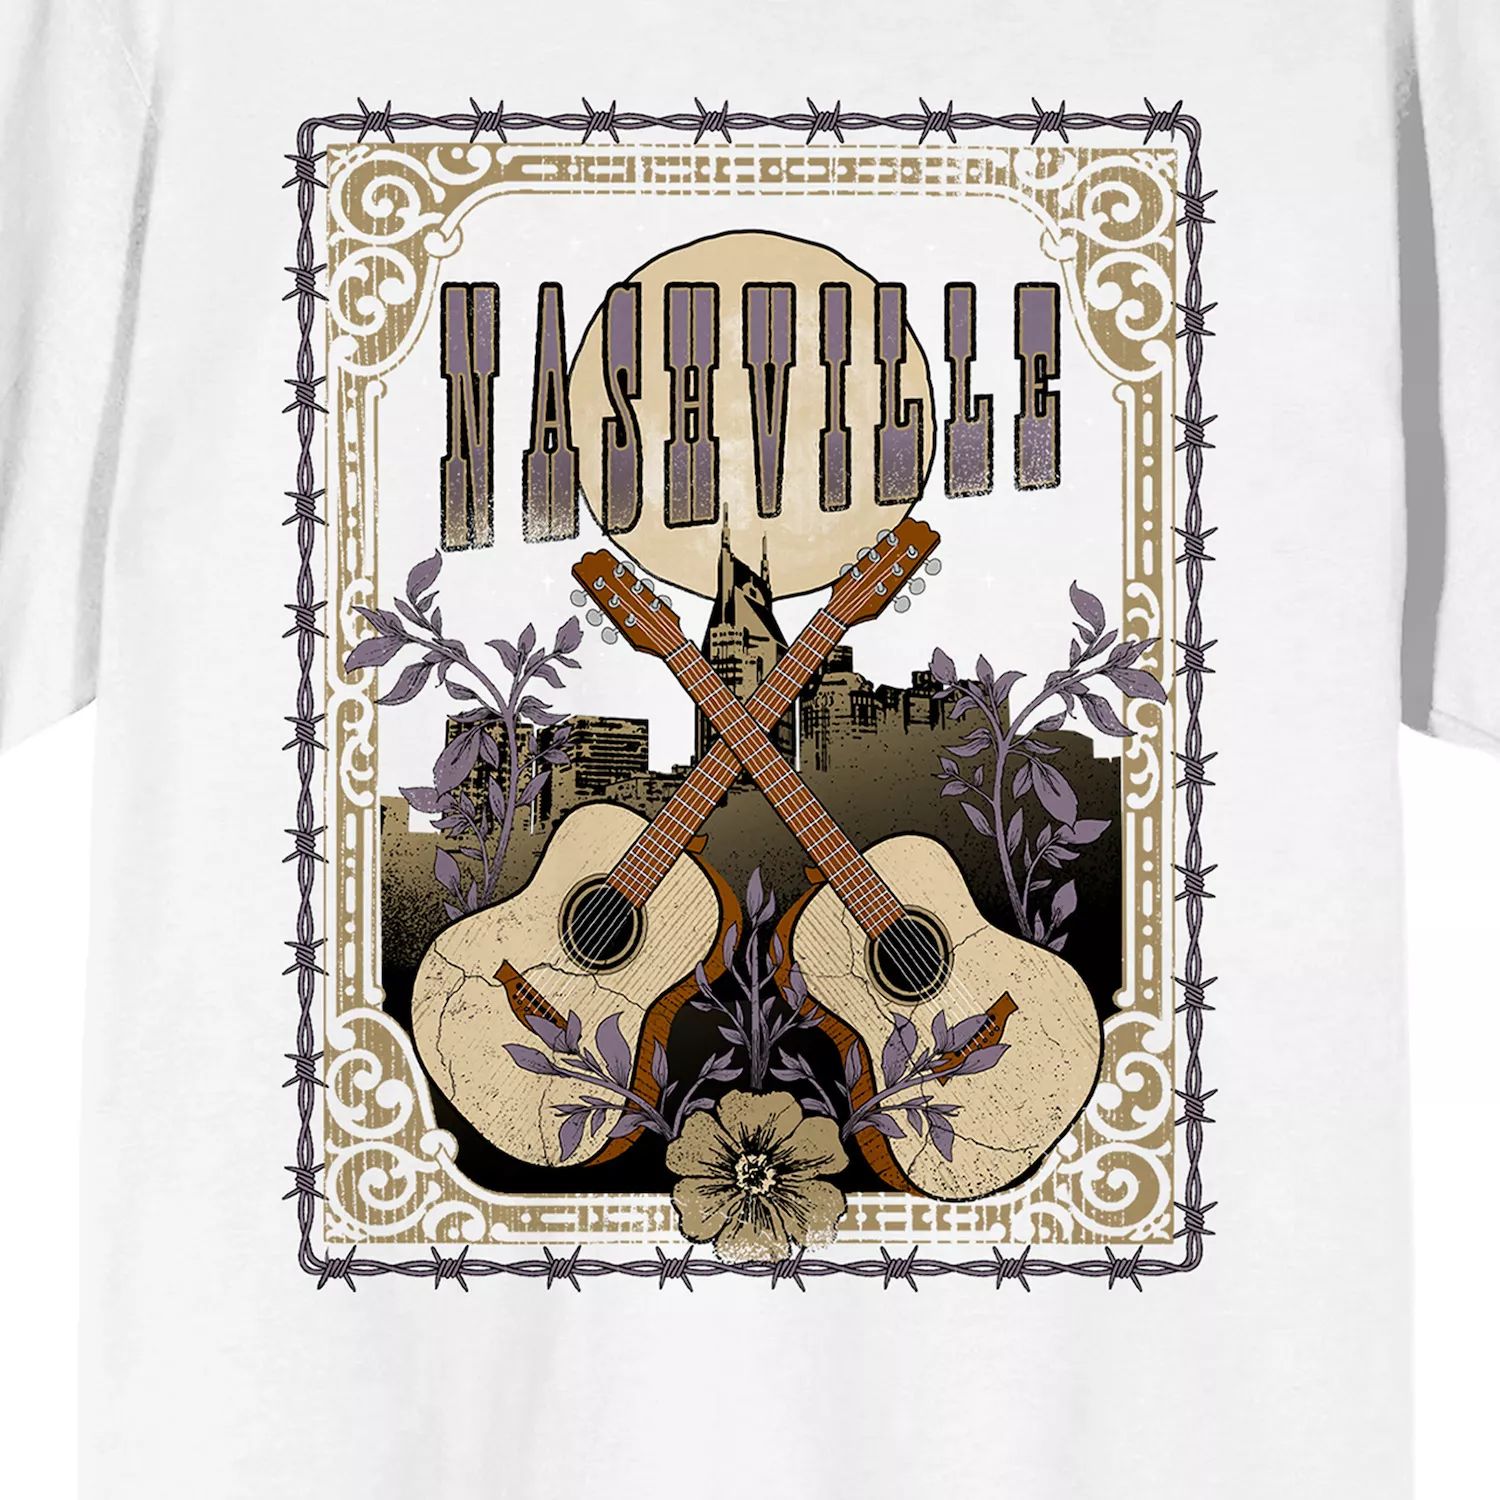 Мужская футболка Nashville Vintage Country с графическим рисунком Licensed Character